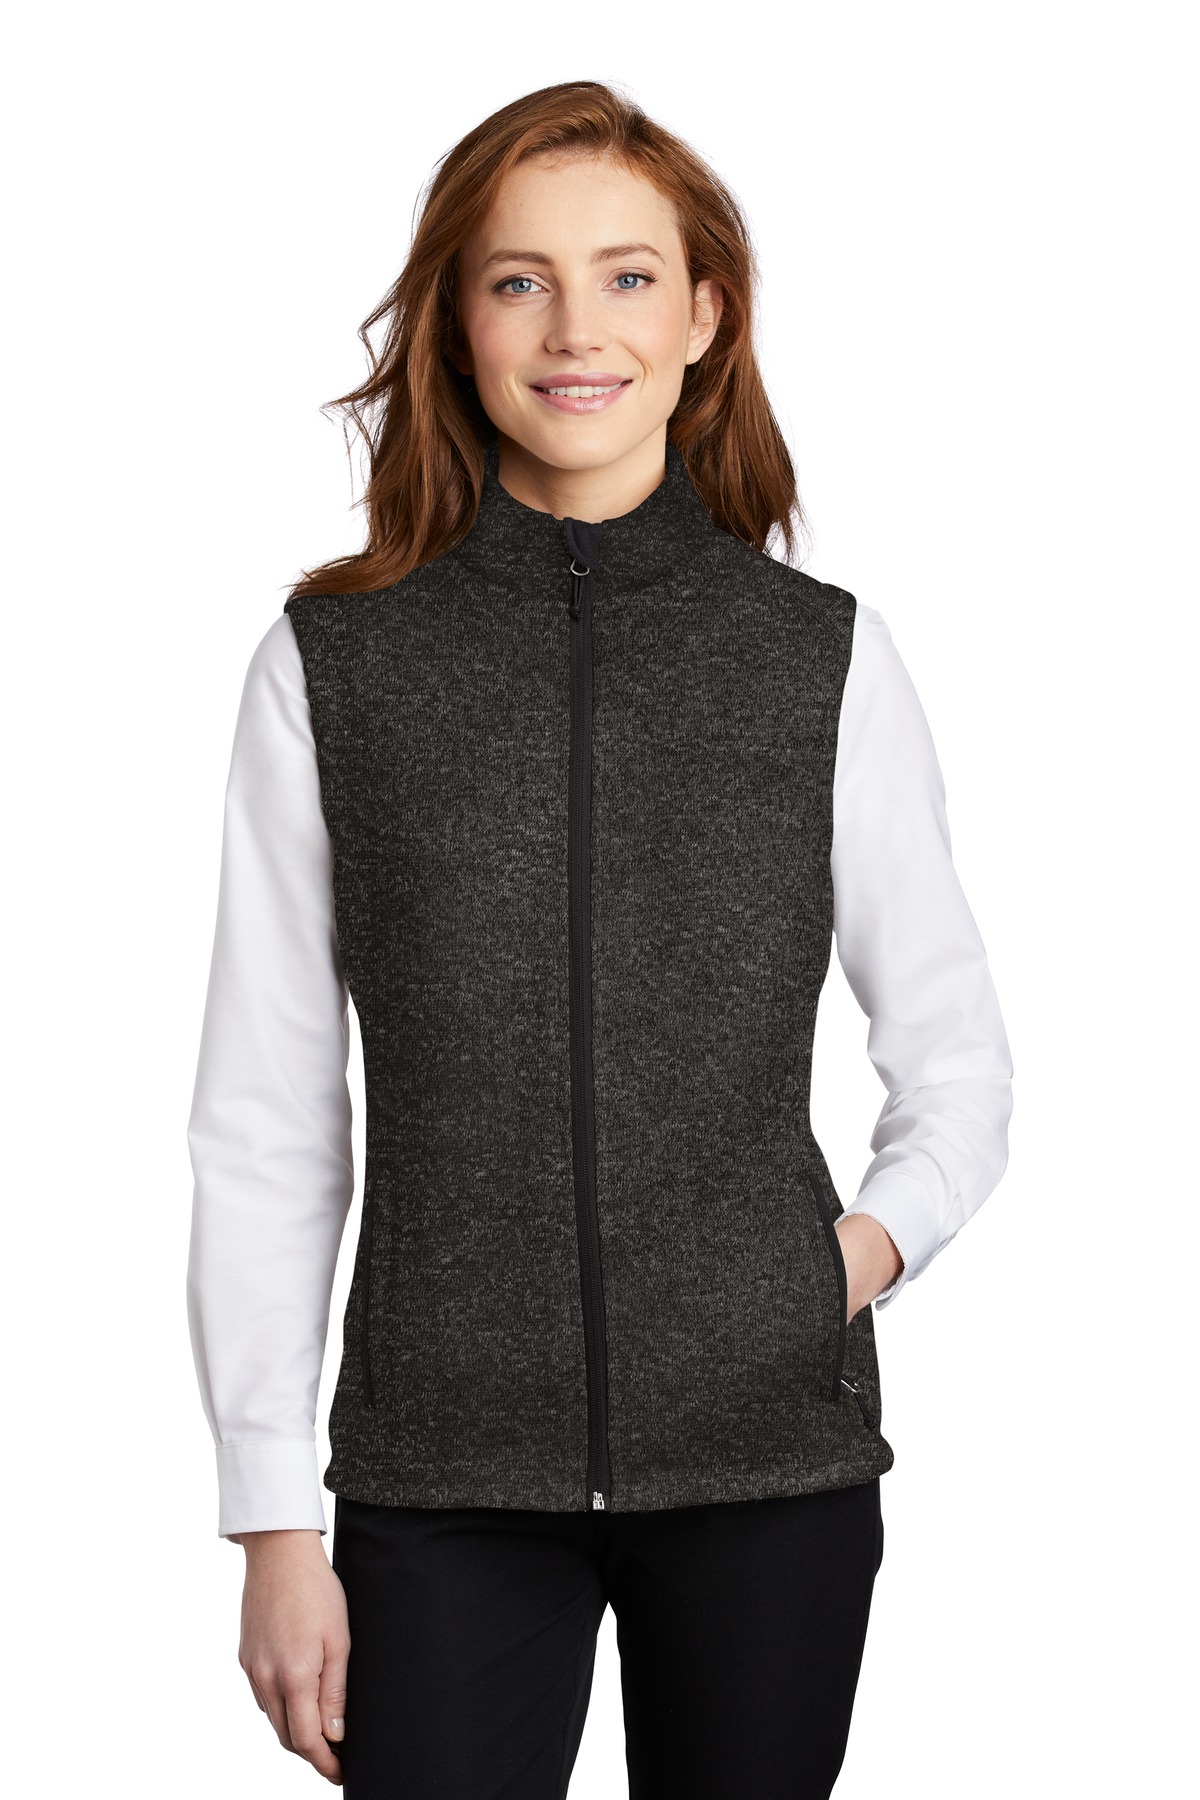 Port Authority Ladies Sweater Fleece Vest-Port Authority